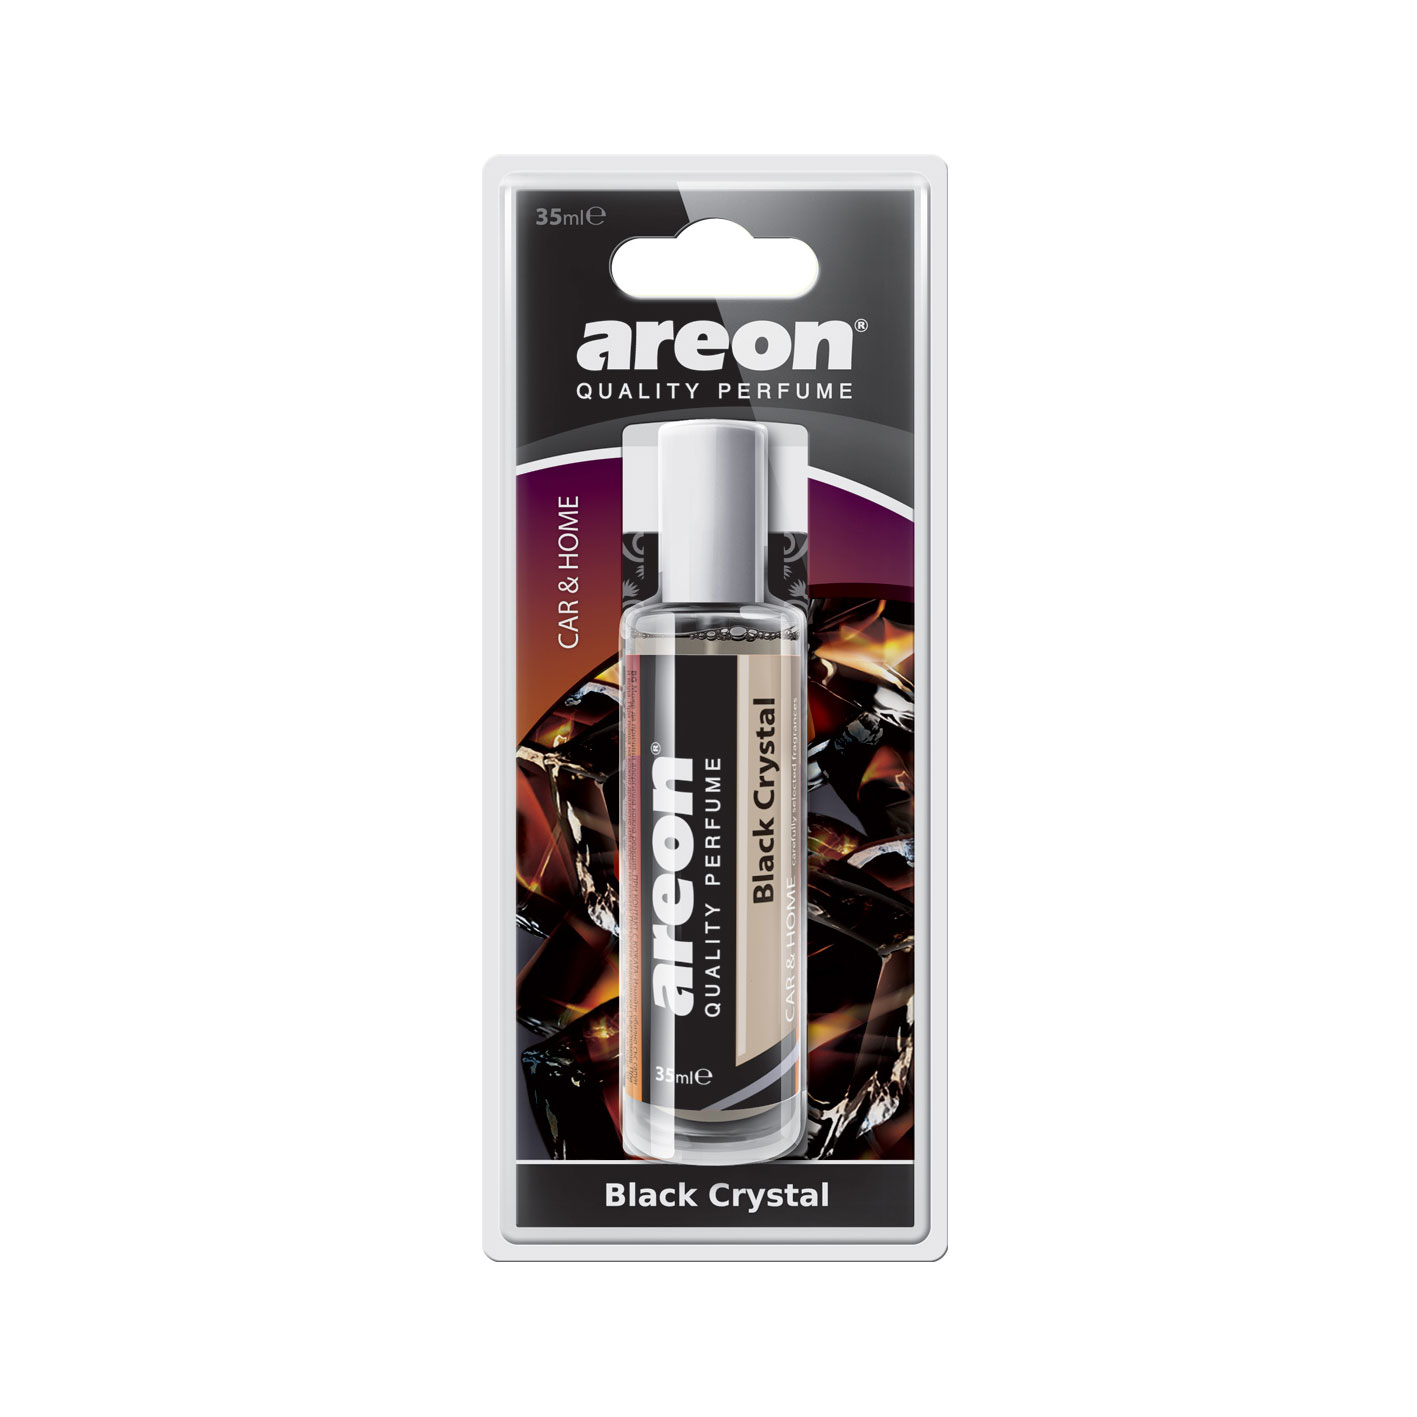 Areon Perfume 35ml Black Crystal